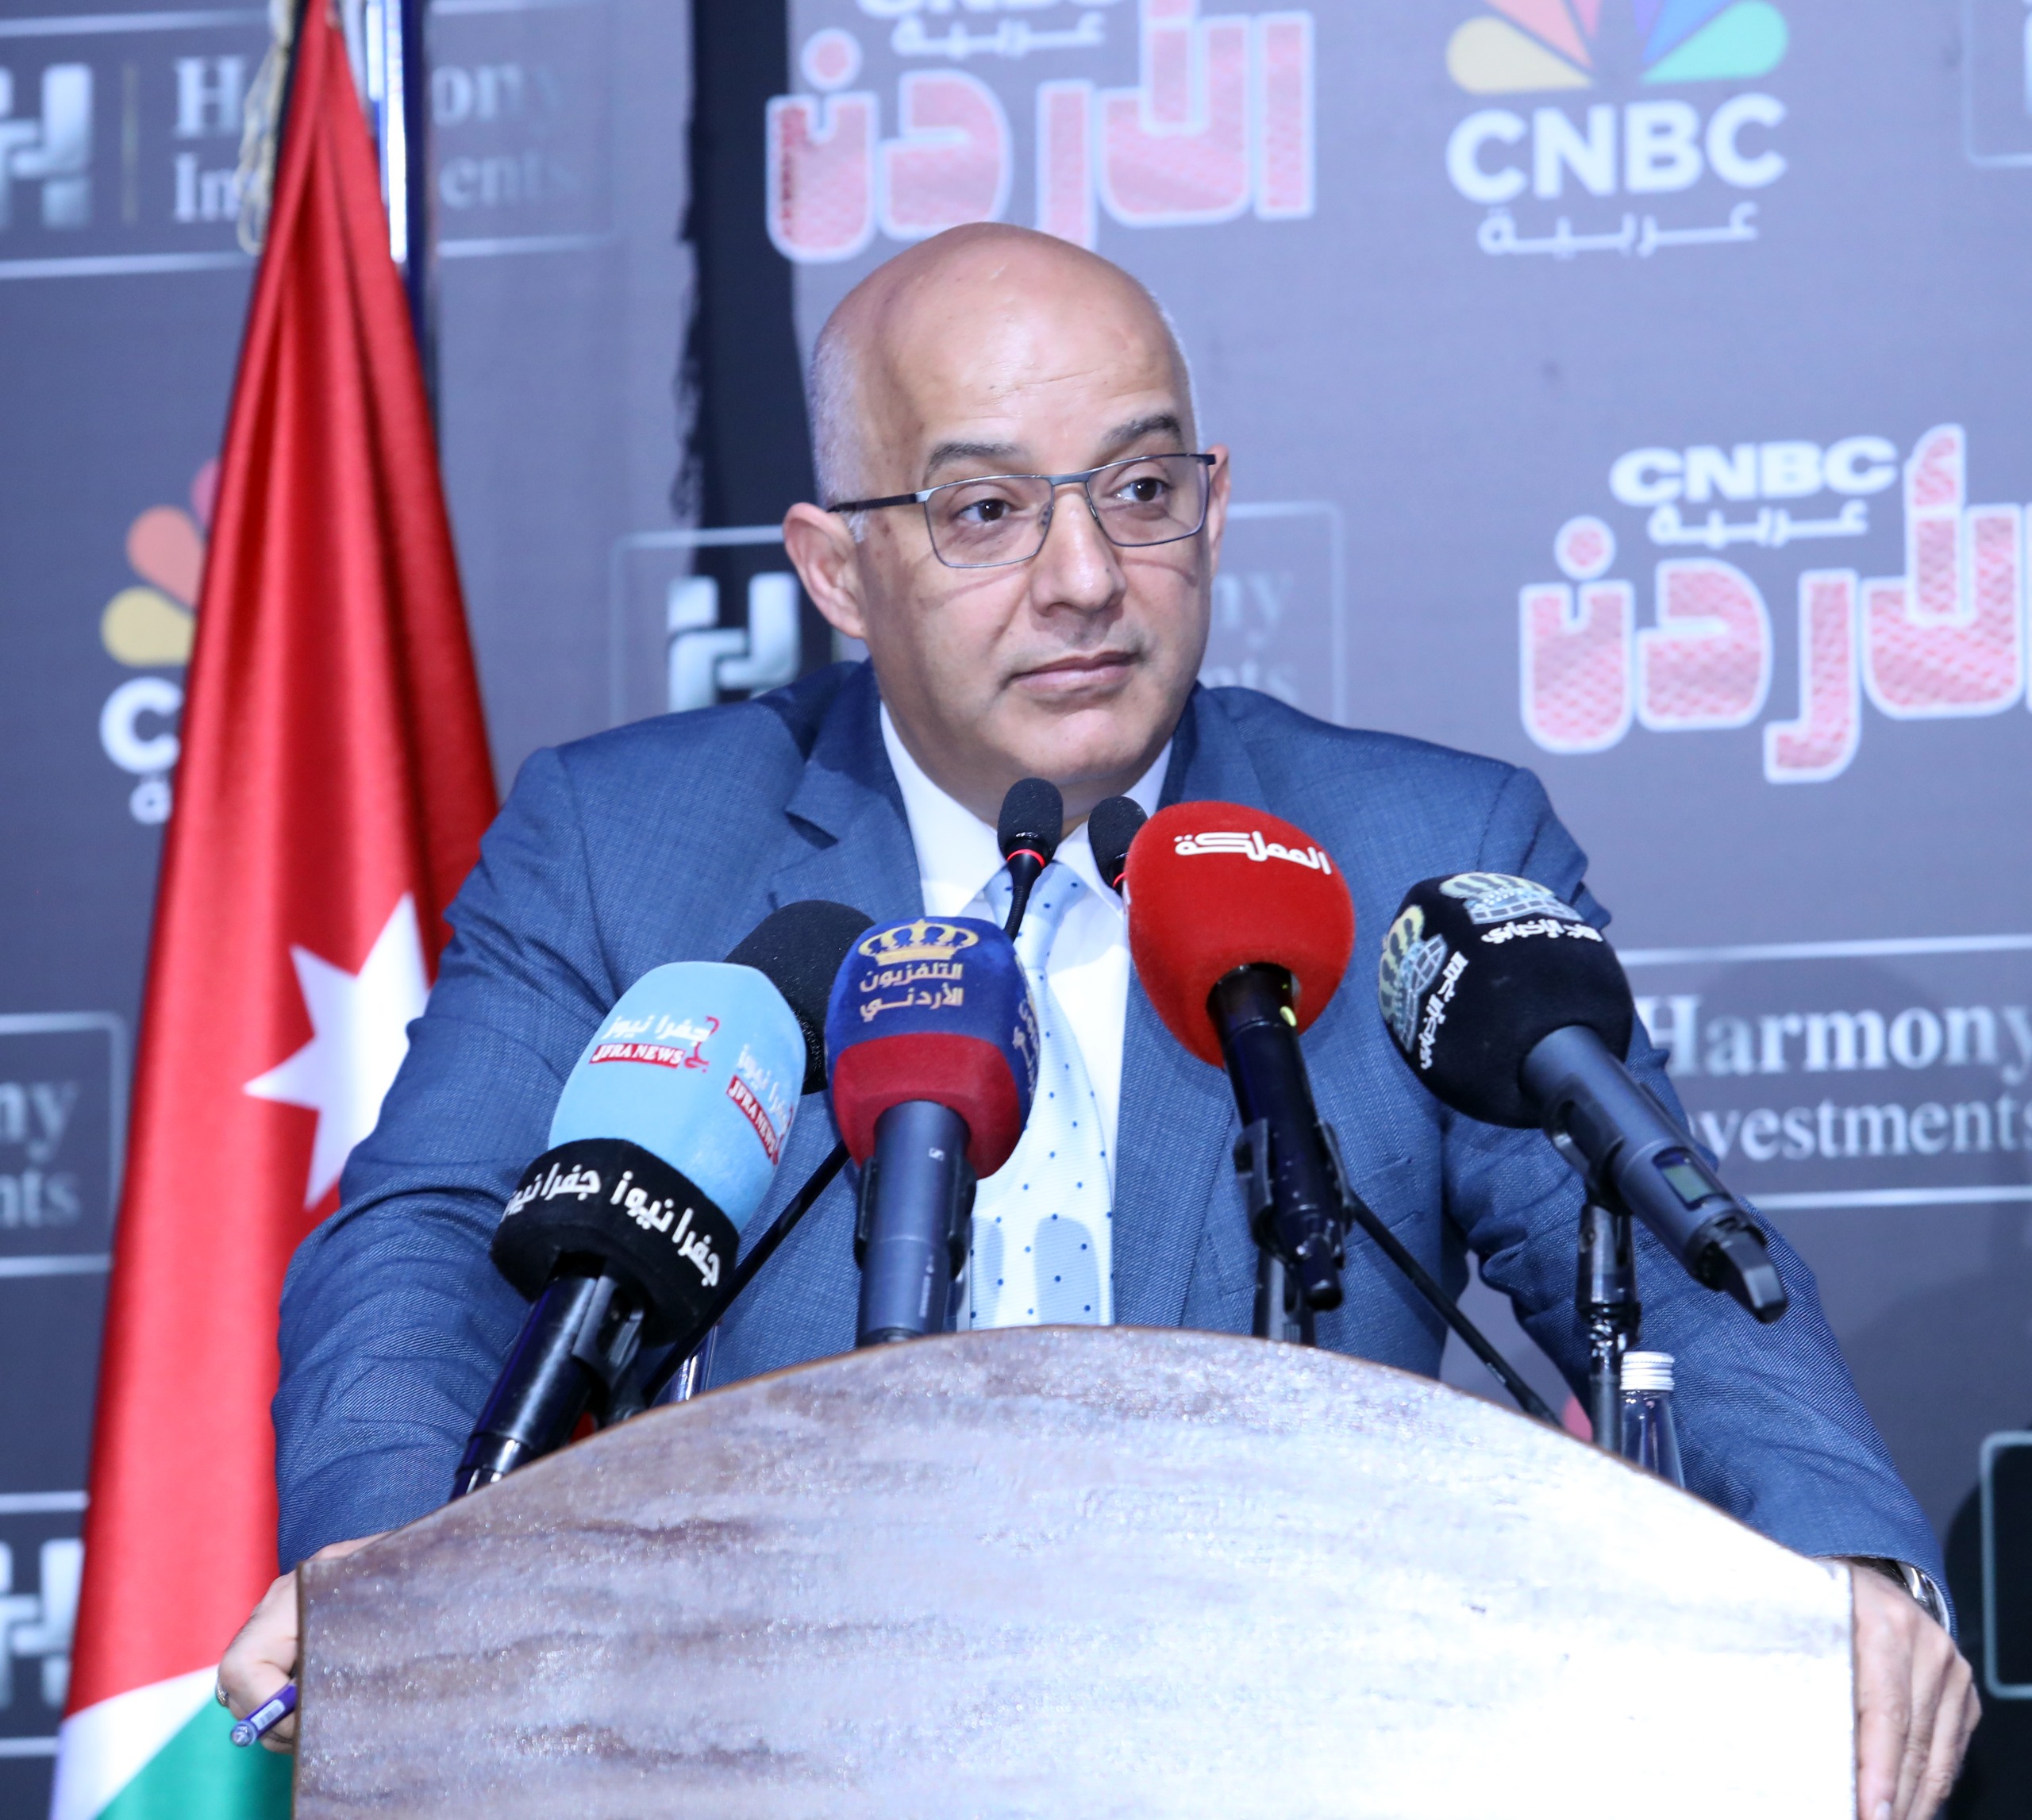 المبيضين يرعى إطلاق برنامج لقناة cnbc في الأردن  